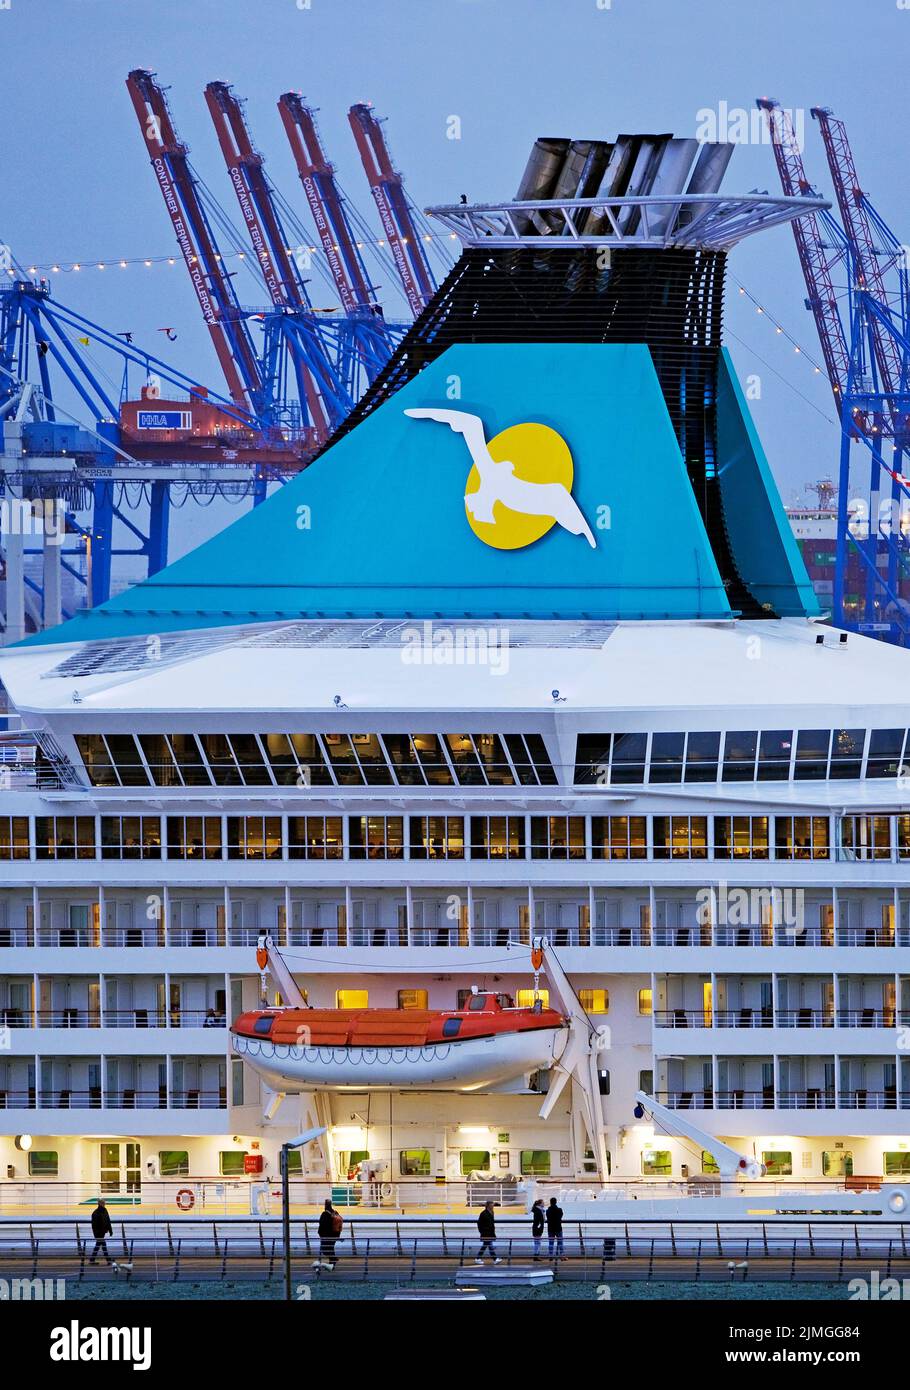 Bateau de croisière Artania, Hamburg Cruise Centre Altona avec les grues du port, Hambourg, Allemagne, Europe Banque D'Images